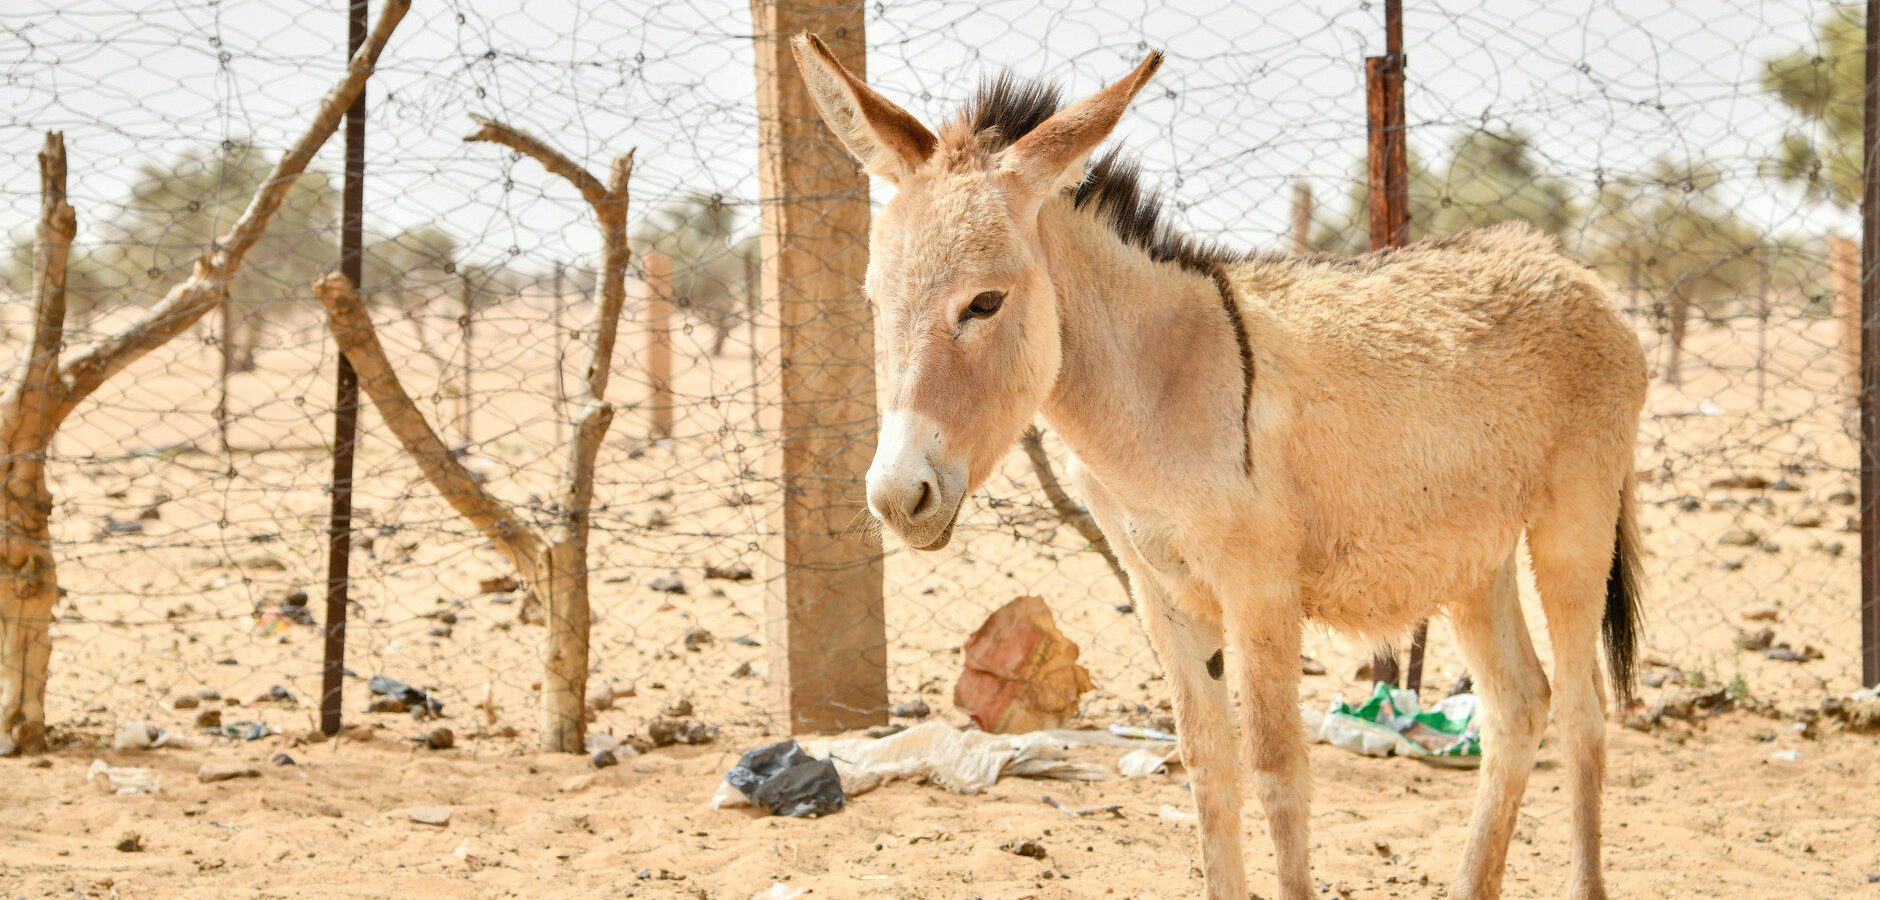 Cute donkey foal working animal in Mauritania